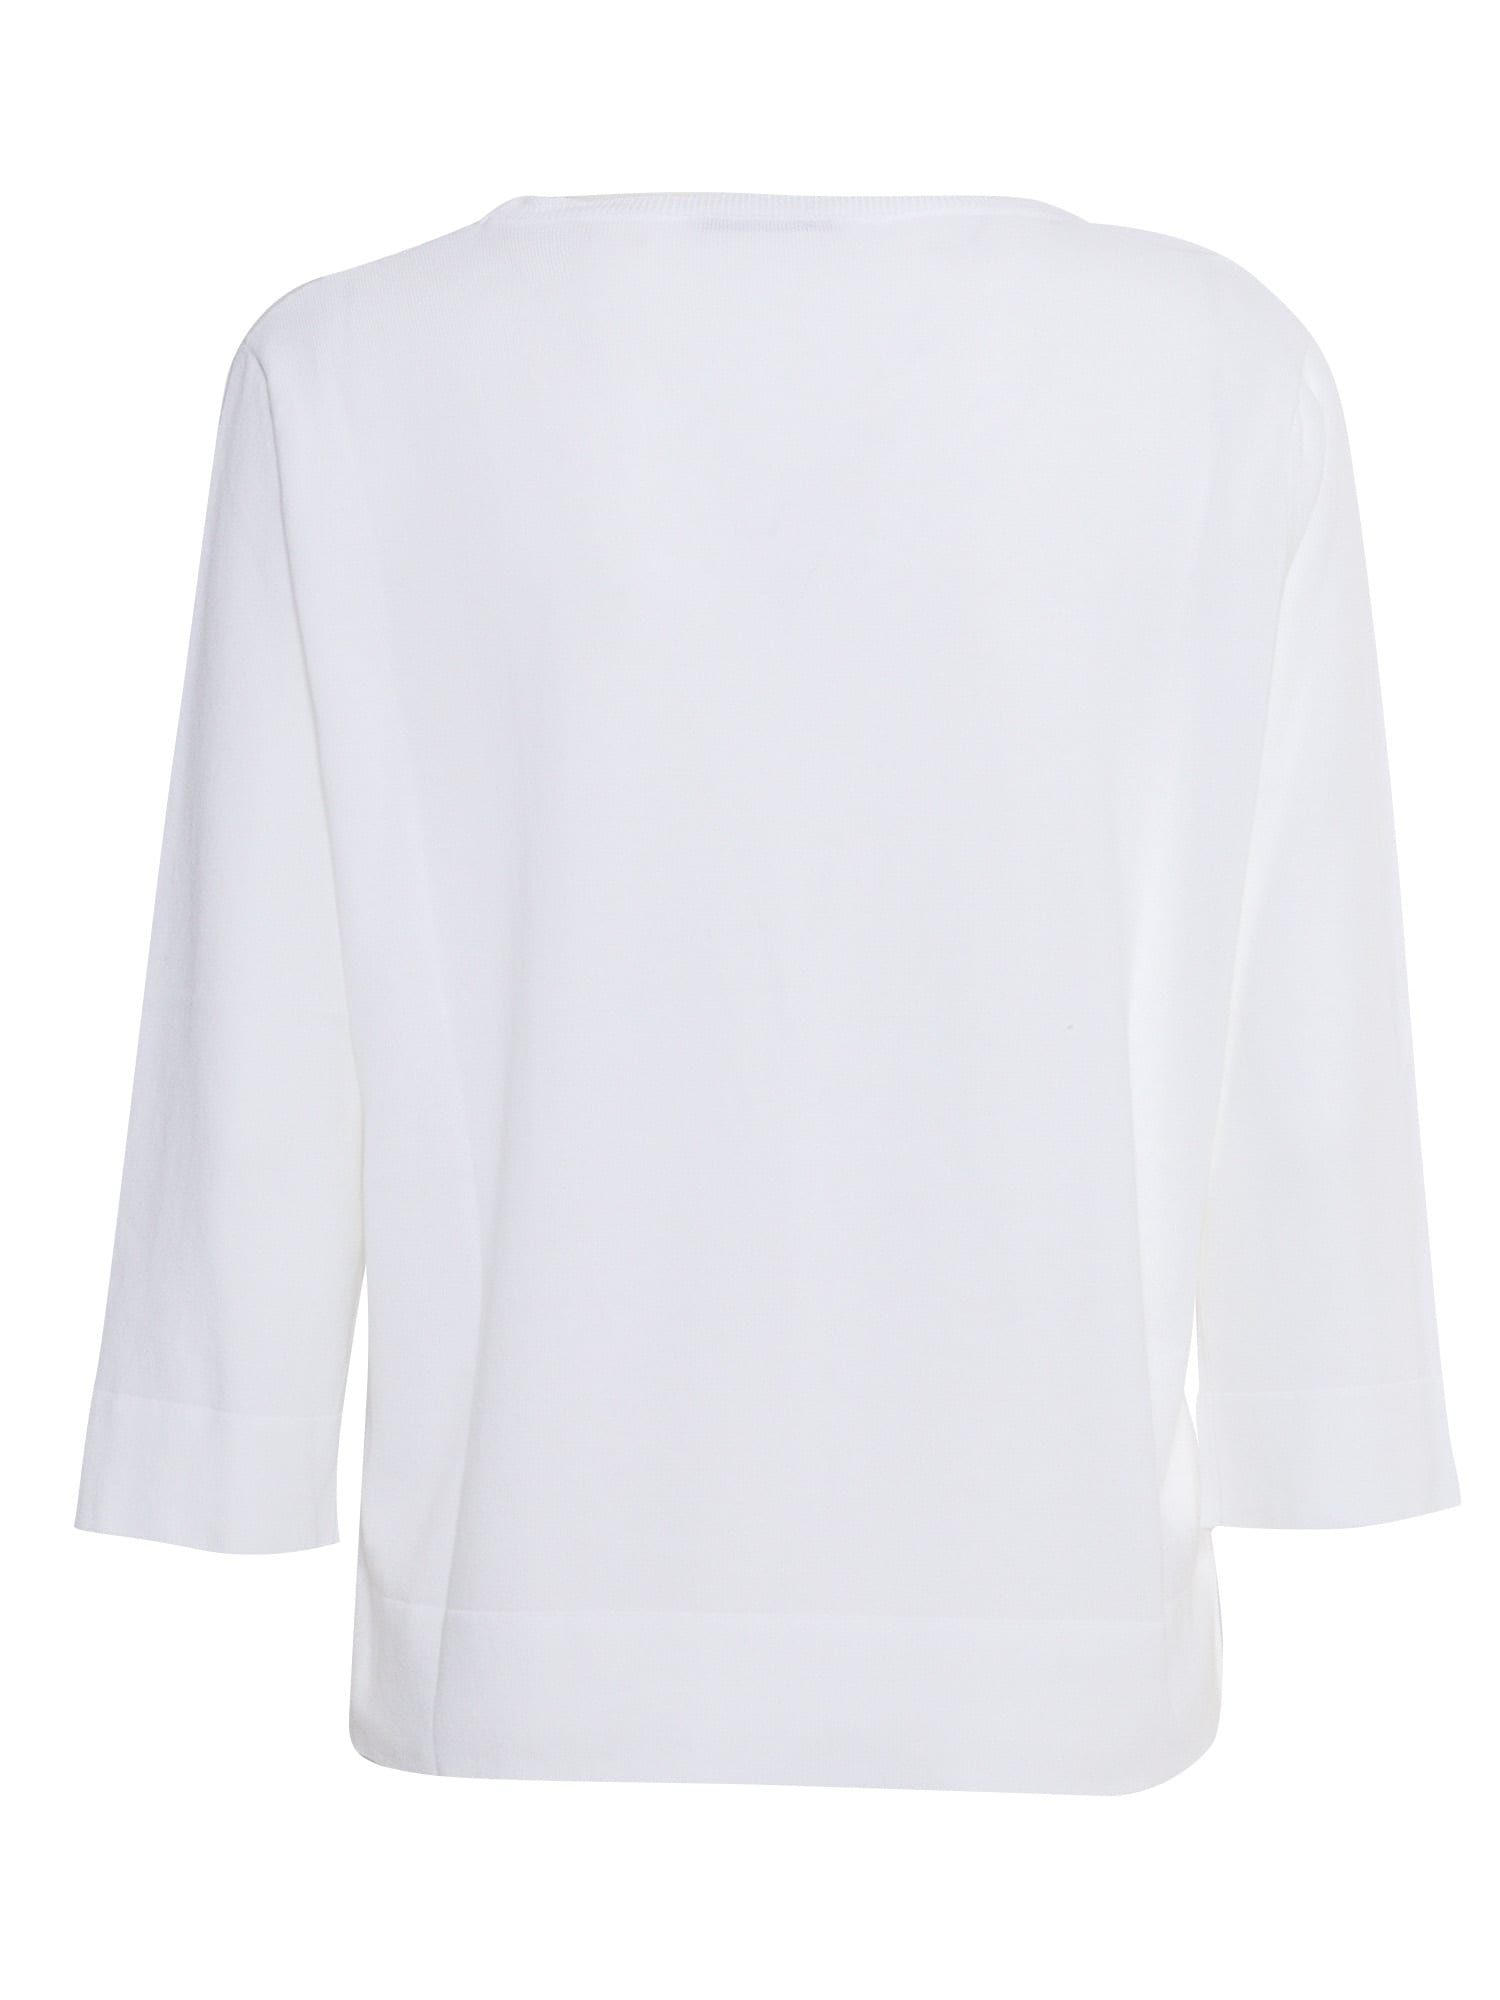 Shop Kangra White Sweater